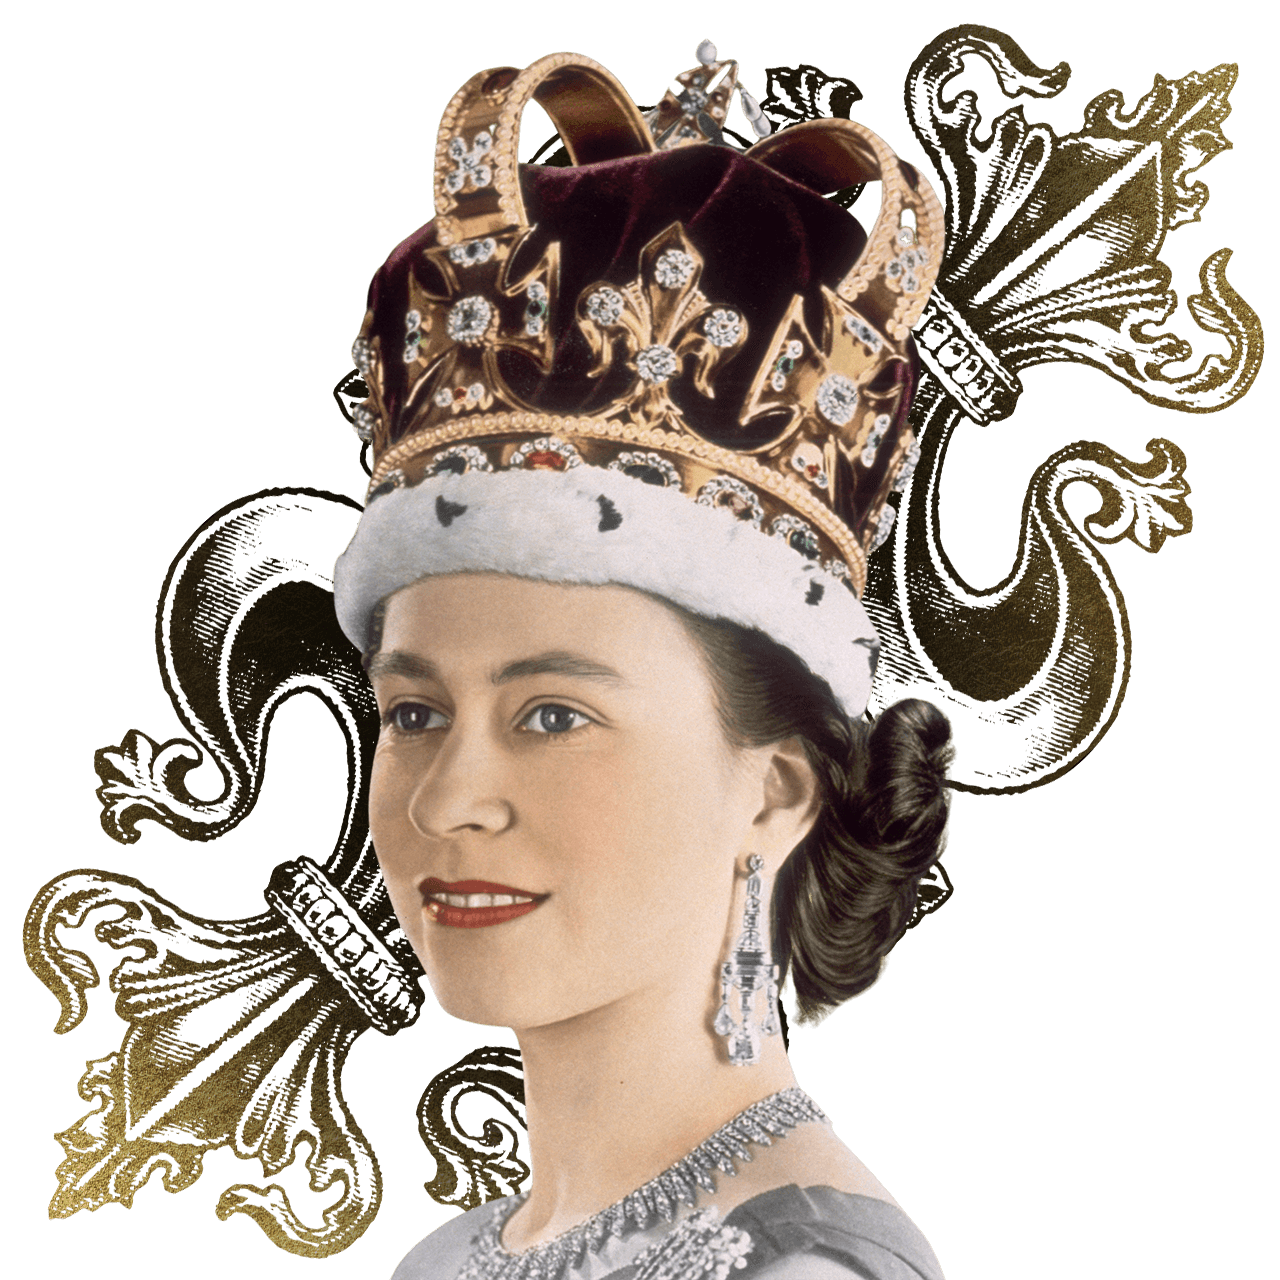 Image of Queen Elizabeth II wearing the St Edward's Crown